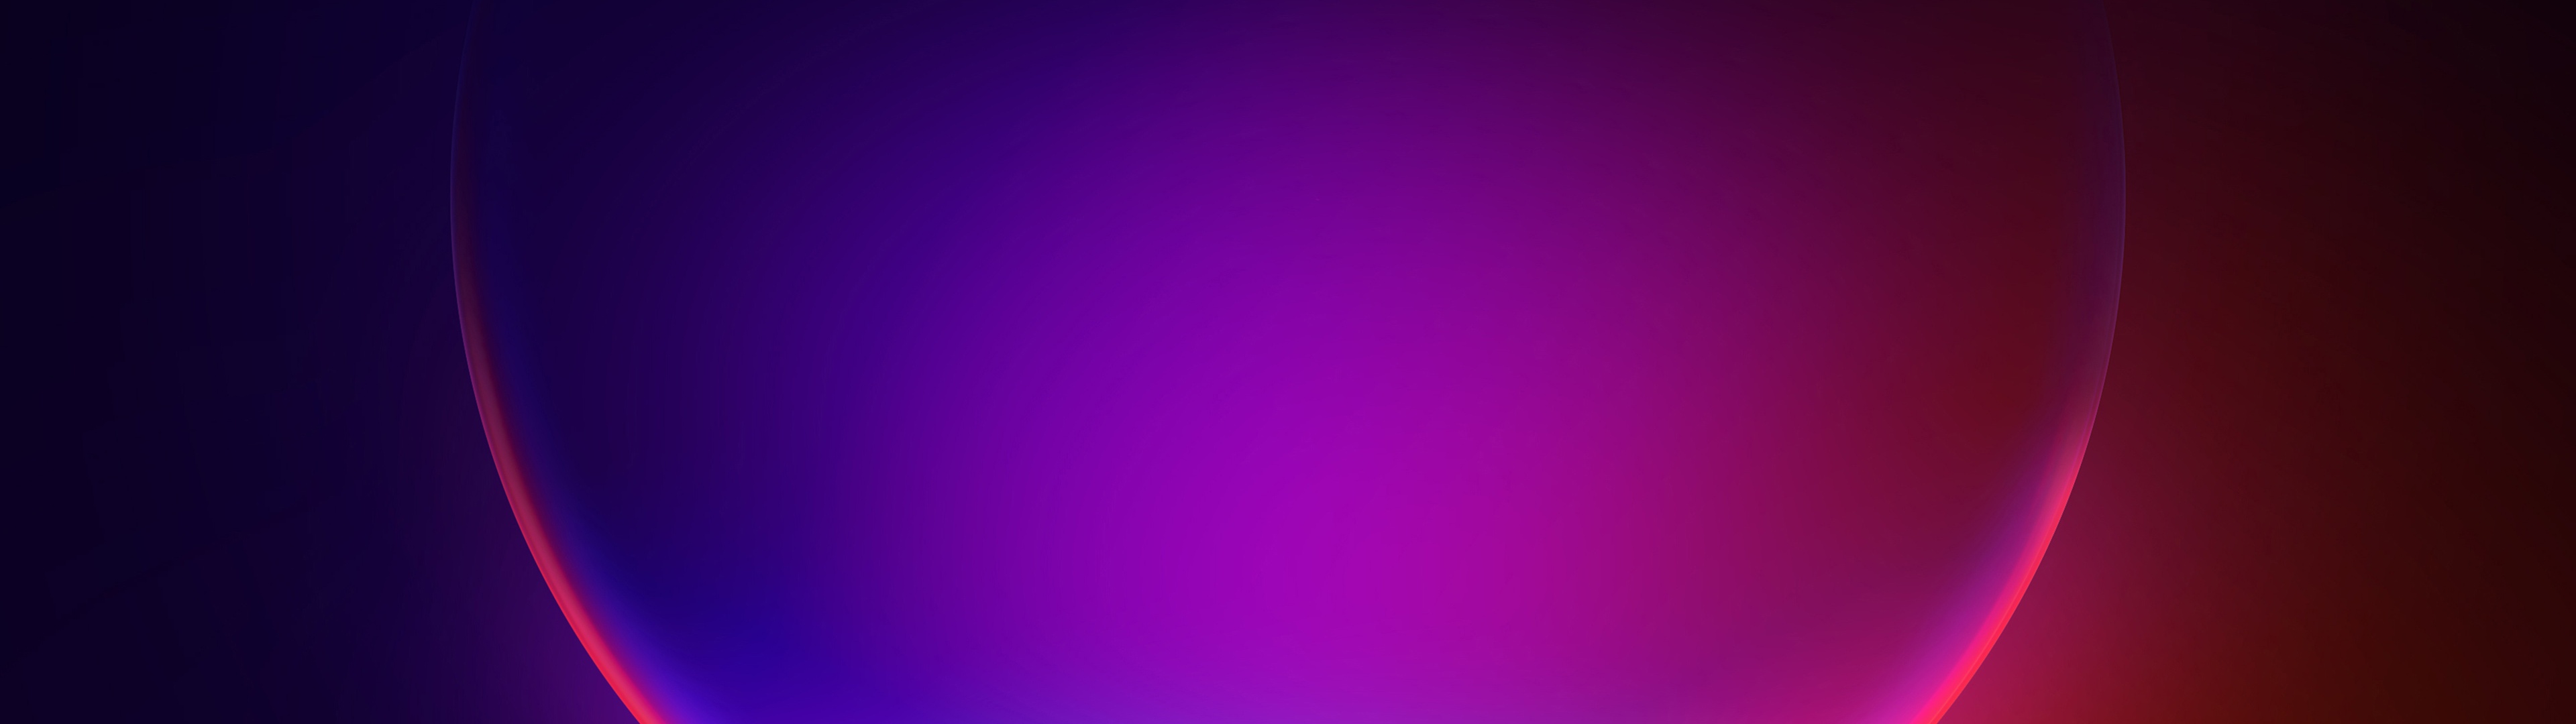 Windows 11 SE Wallpaper 4K, Stock, Colorful, 5K, 8K